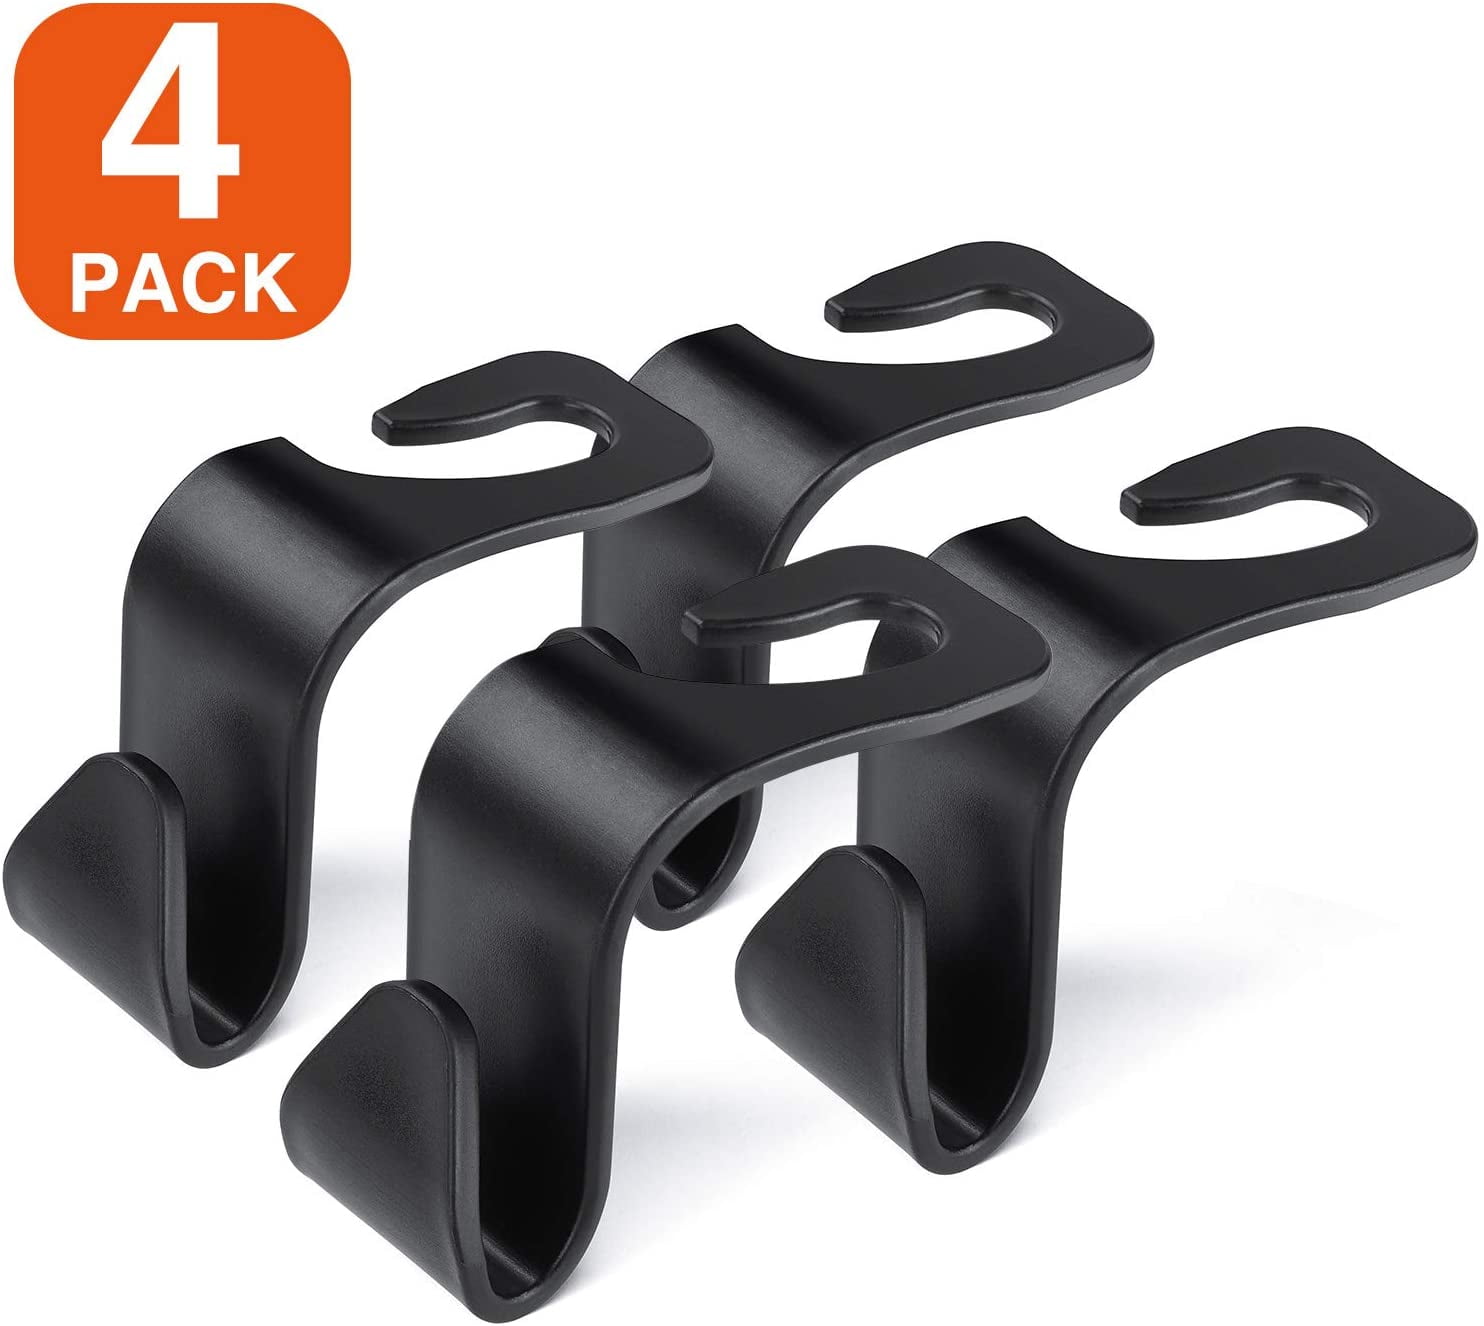 Lebogner Universal Fit Car Seat Headrest Hooks For Storage - 4 Pack : Target